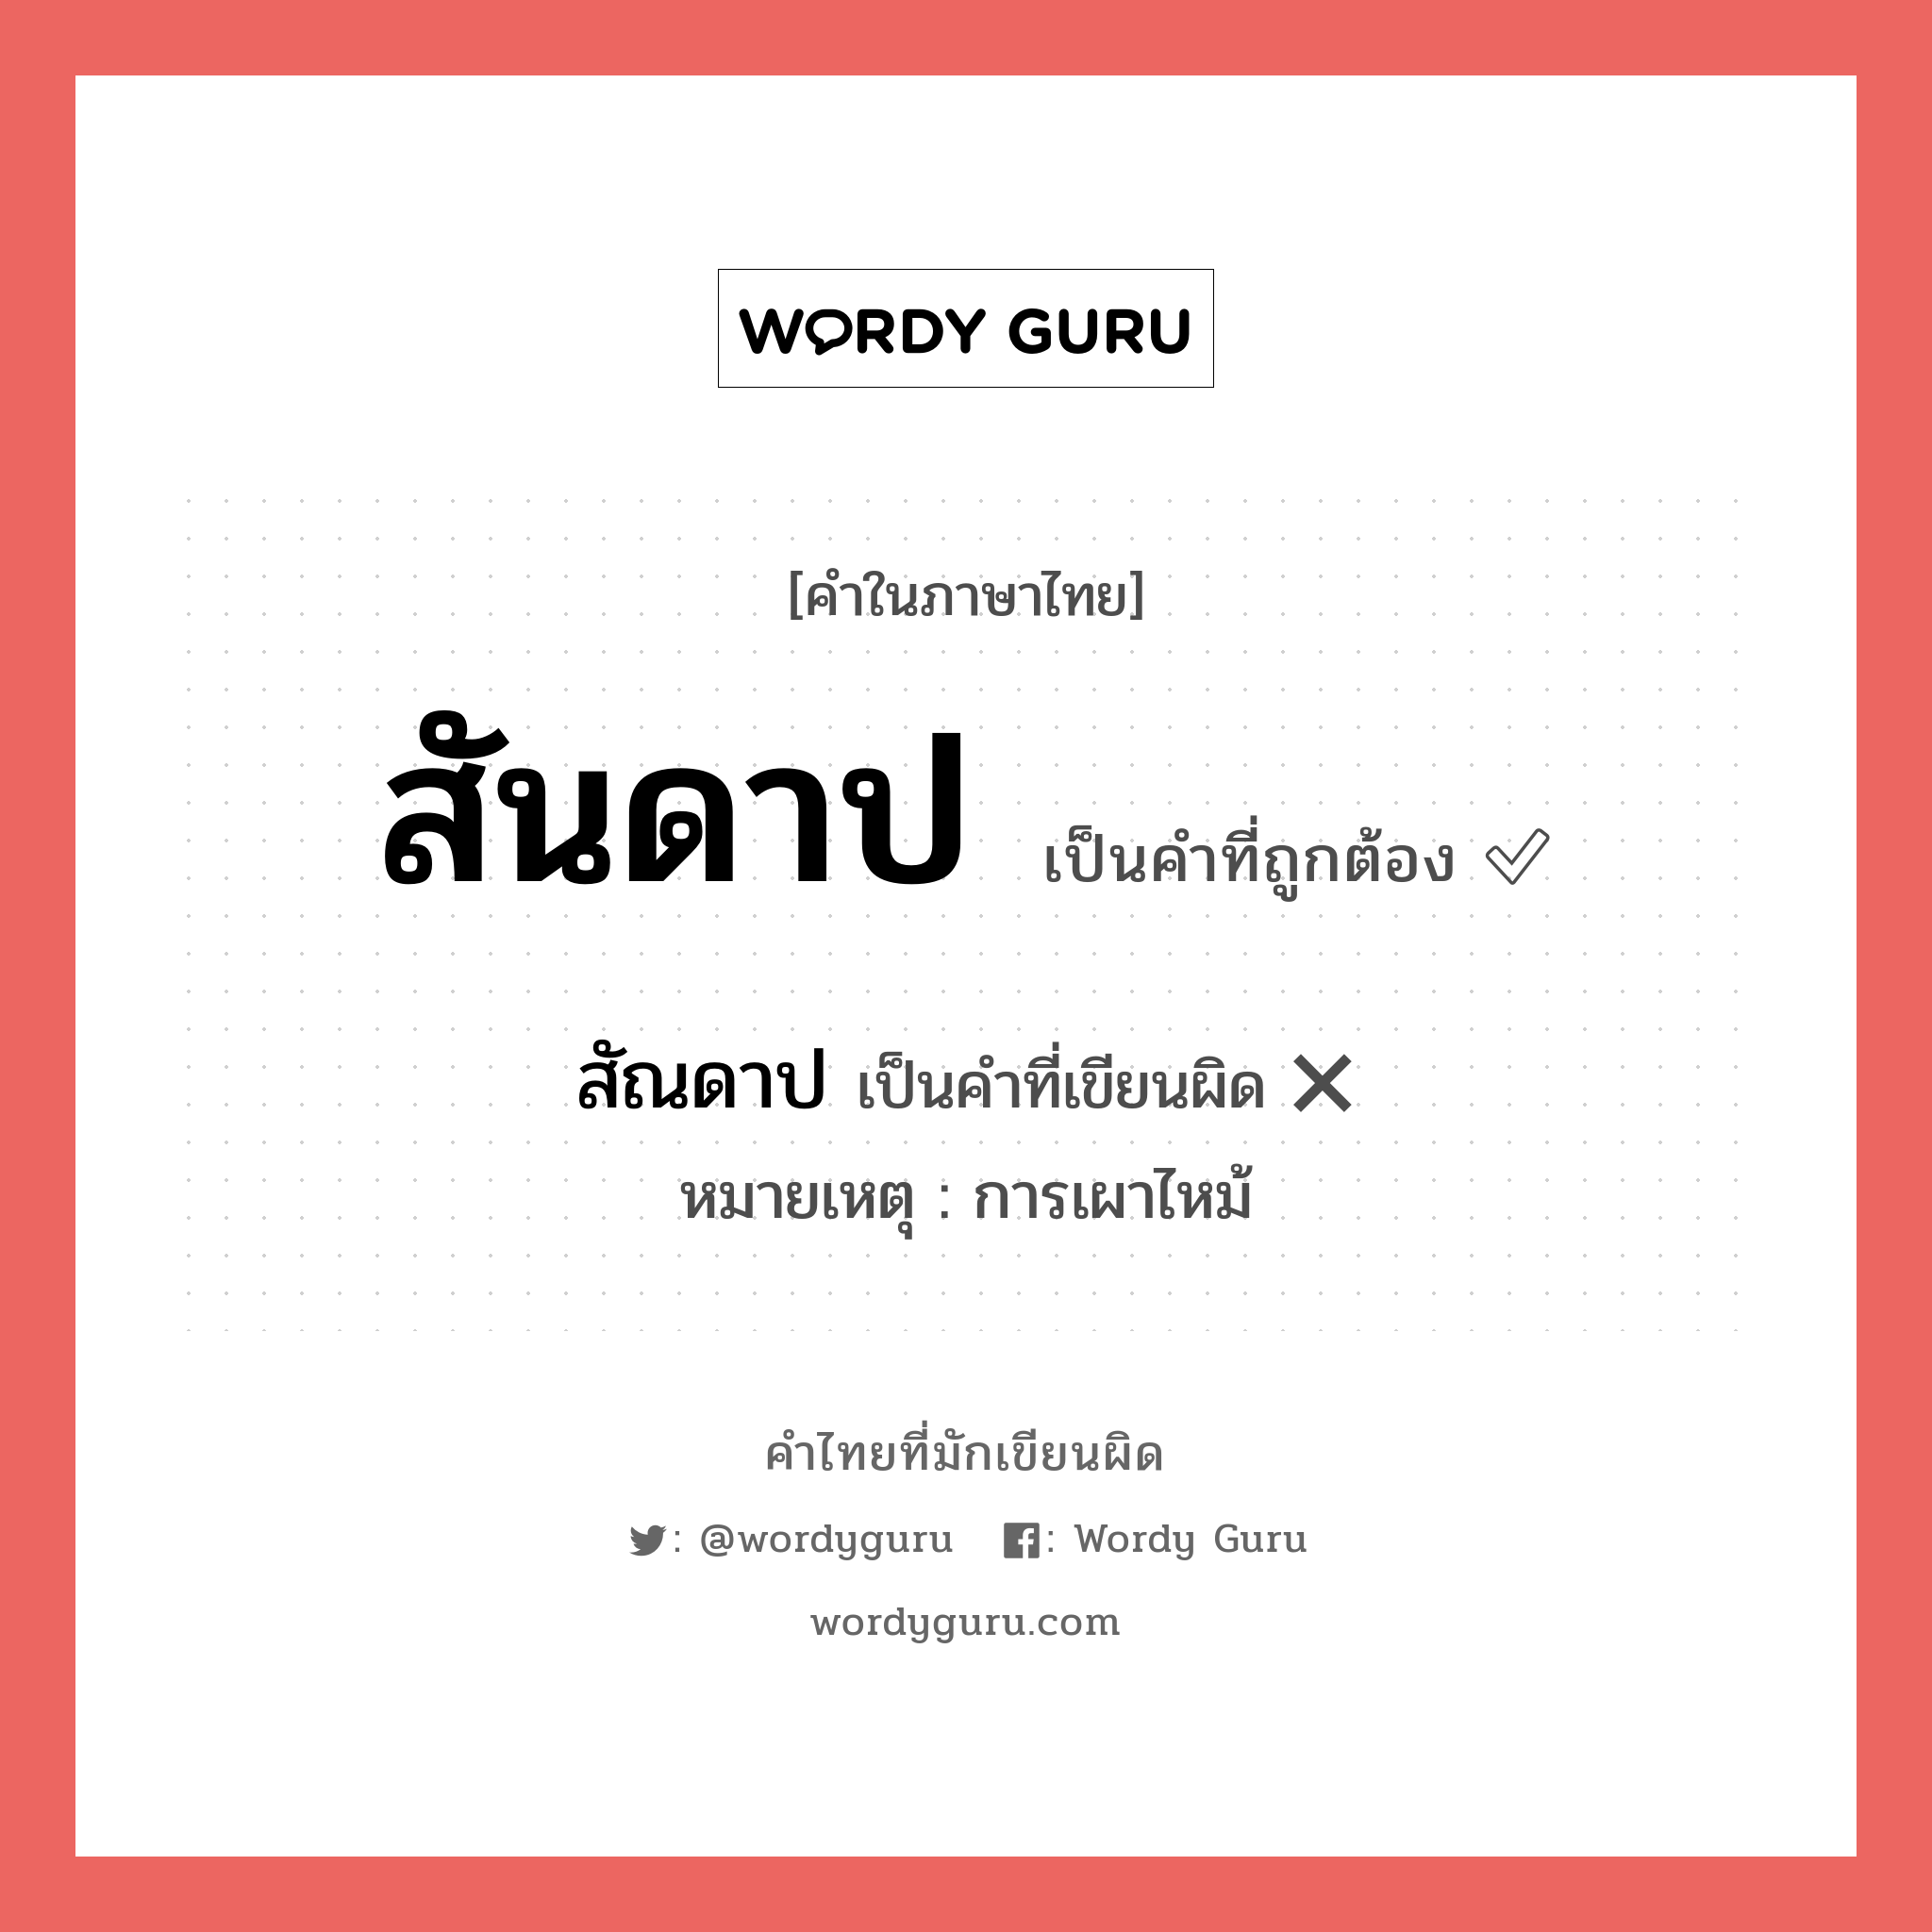 สันดาป หรือ สัณดาป เขียนยังไง? คำไหนเขียนถูก?, คำในภาษาไทยที่มักเขียนผิด สันดาป คำที่ผิด ❌ สัณดาป หมายเหตุ การเผาไหม้